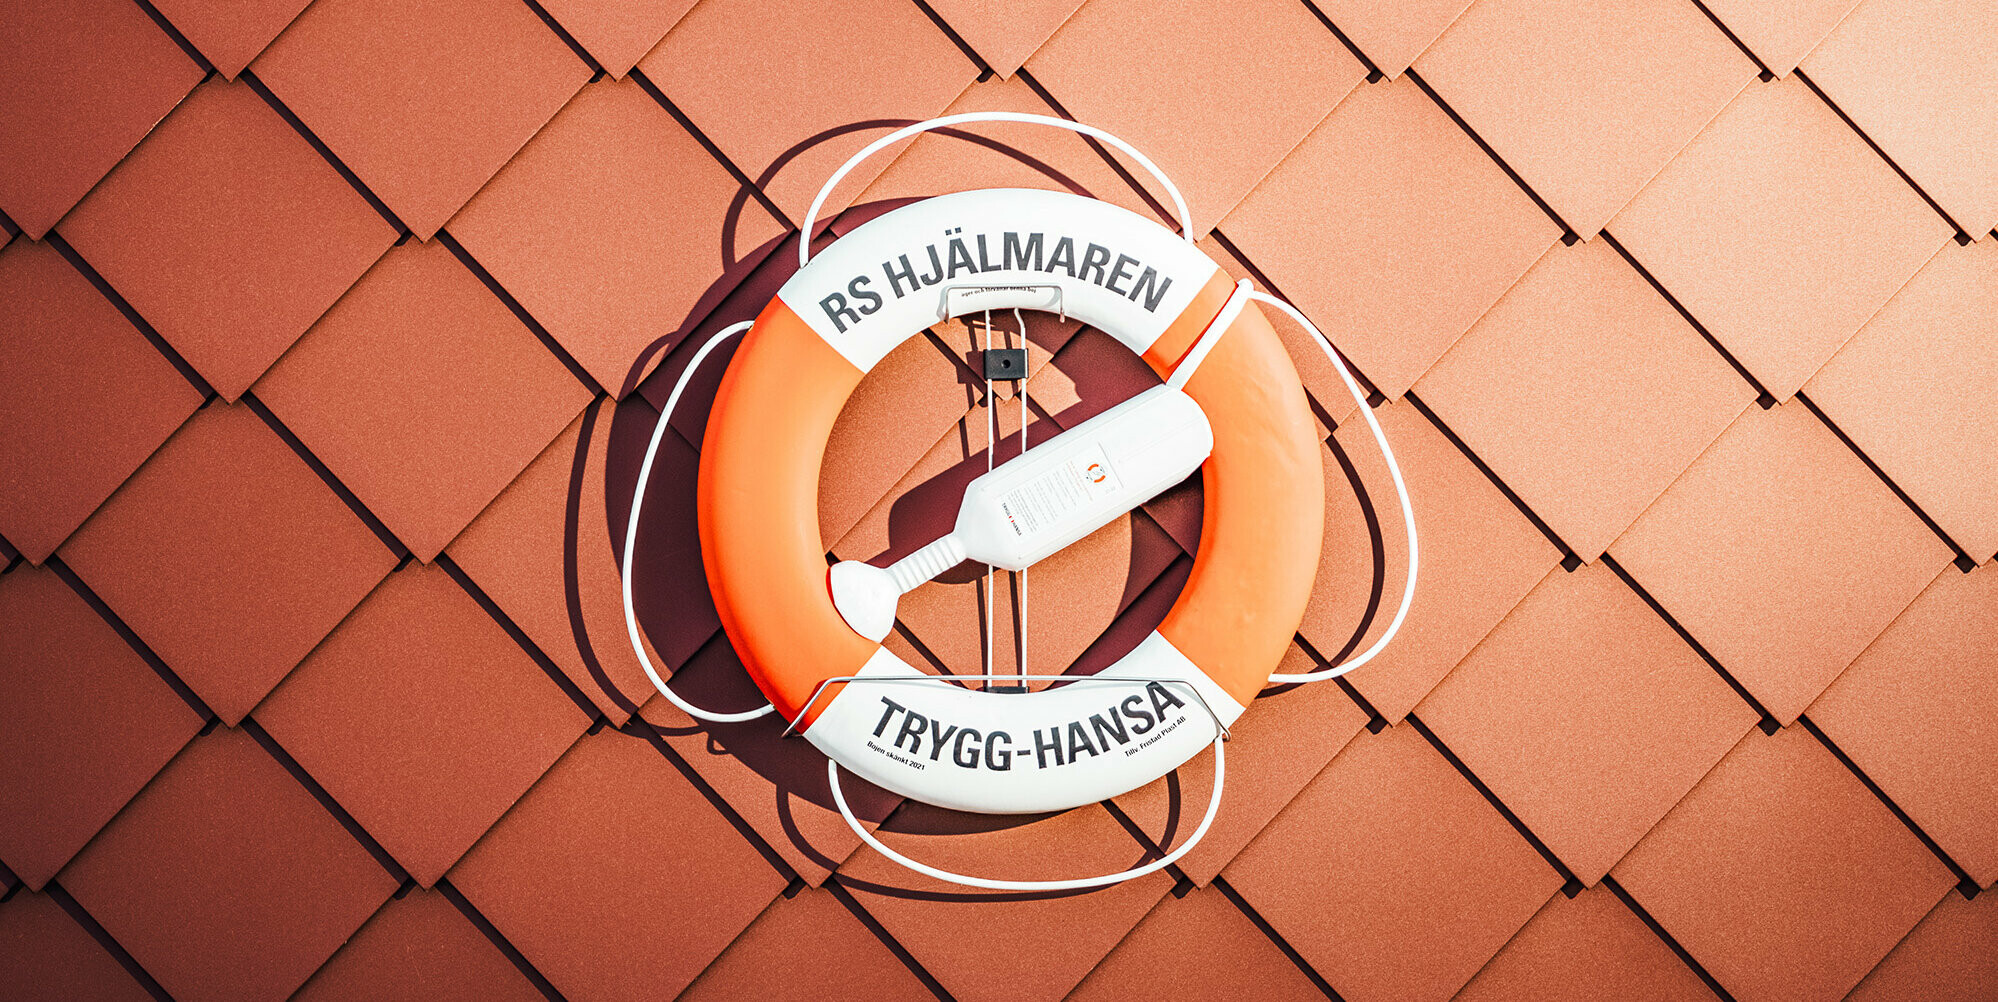 Nahaufnahme der Fassade des Seenotrettungsstationshauses am Hjälmaren See in Schweden, mit einem leuchtend orangefarbenen Rettungsring an der Wand. Der Rettungsring trägt die Aufschrift 'RS HJÄLMAREN TRYGG-HANSA', umrahmt von den charakteristischen PREFA Wandrauten 29×29 in P.10 Oxydrot, deren gleichmäßige Struktur Stärke und Zuverlässigkeit vermitteln. Der Rettungsring, ein Symbol der Sicherheit auf dem Wasser, kontrastiert eindrucksvoll mit der texturierten, roten Aluminiumoberfläche, die die Widerstandsfähigkeit des Gebäudes gegen die harten schwedischen Wetterbedingungen unterstreicht.